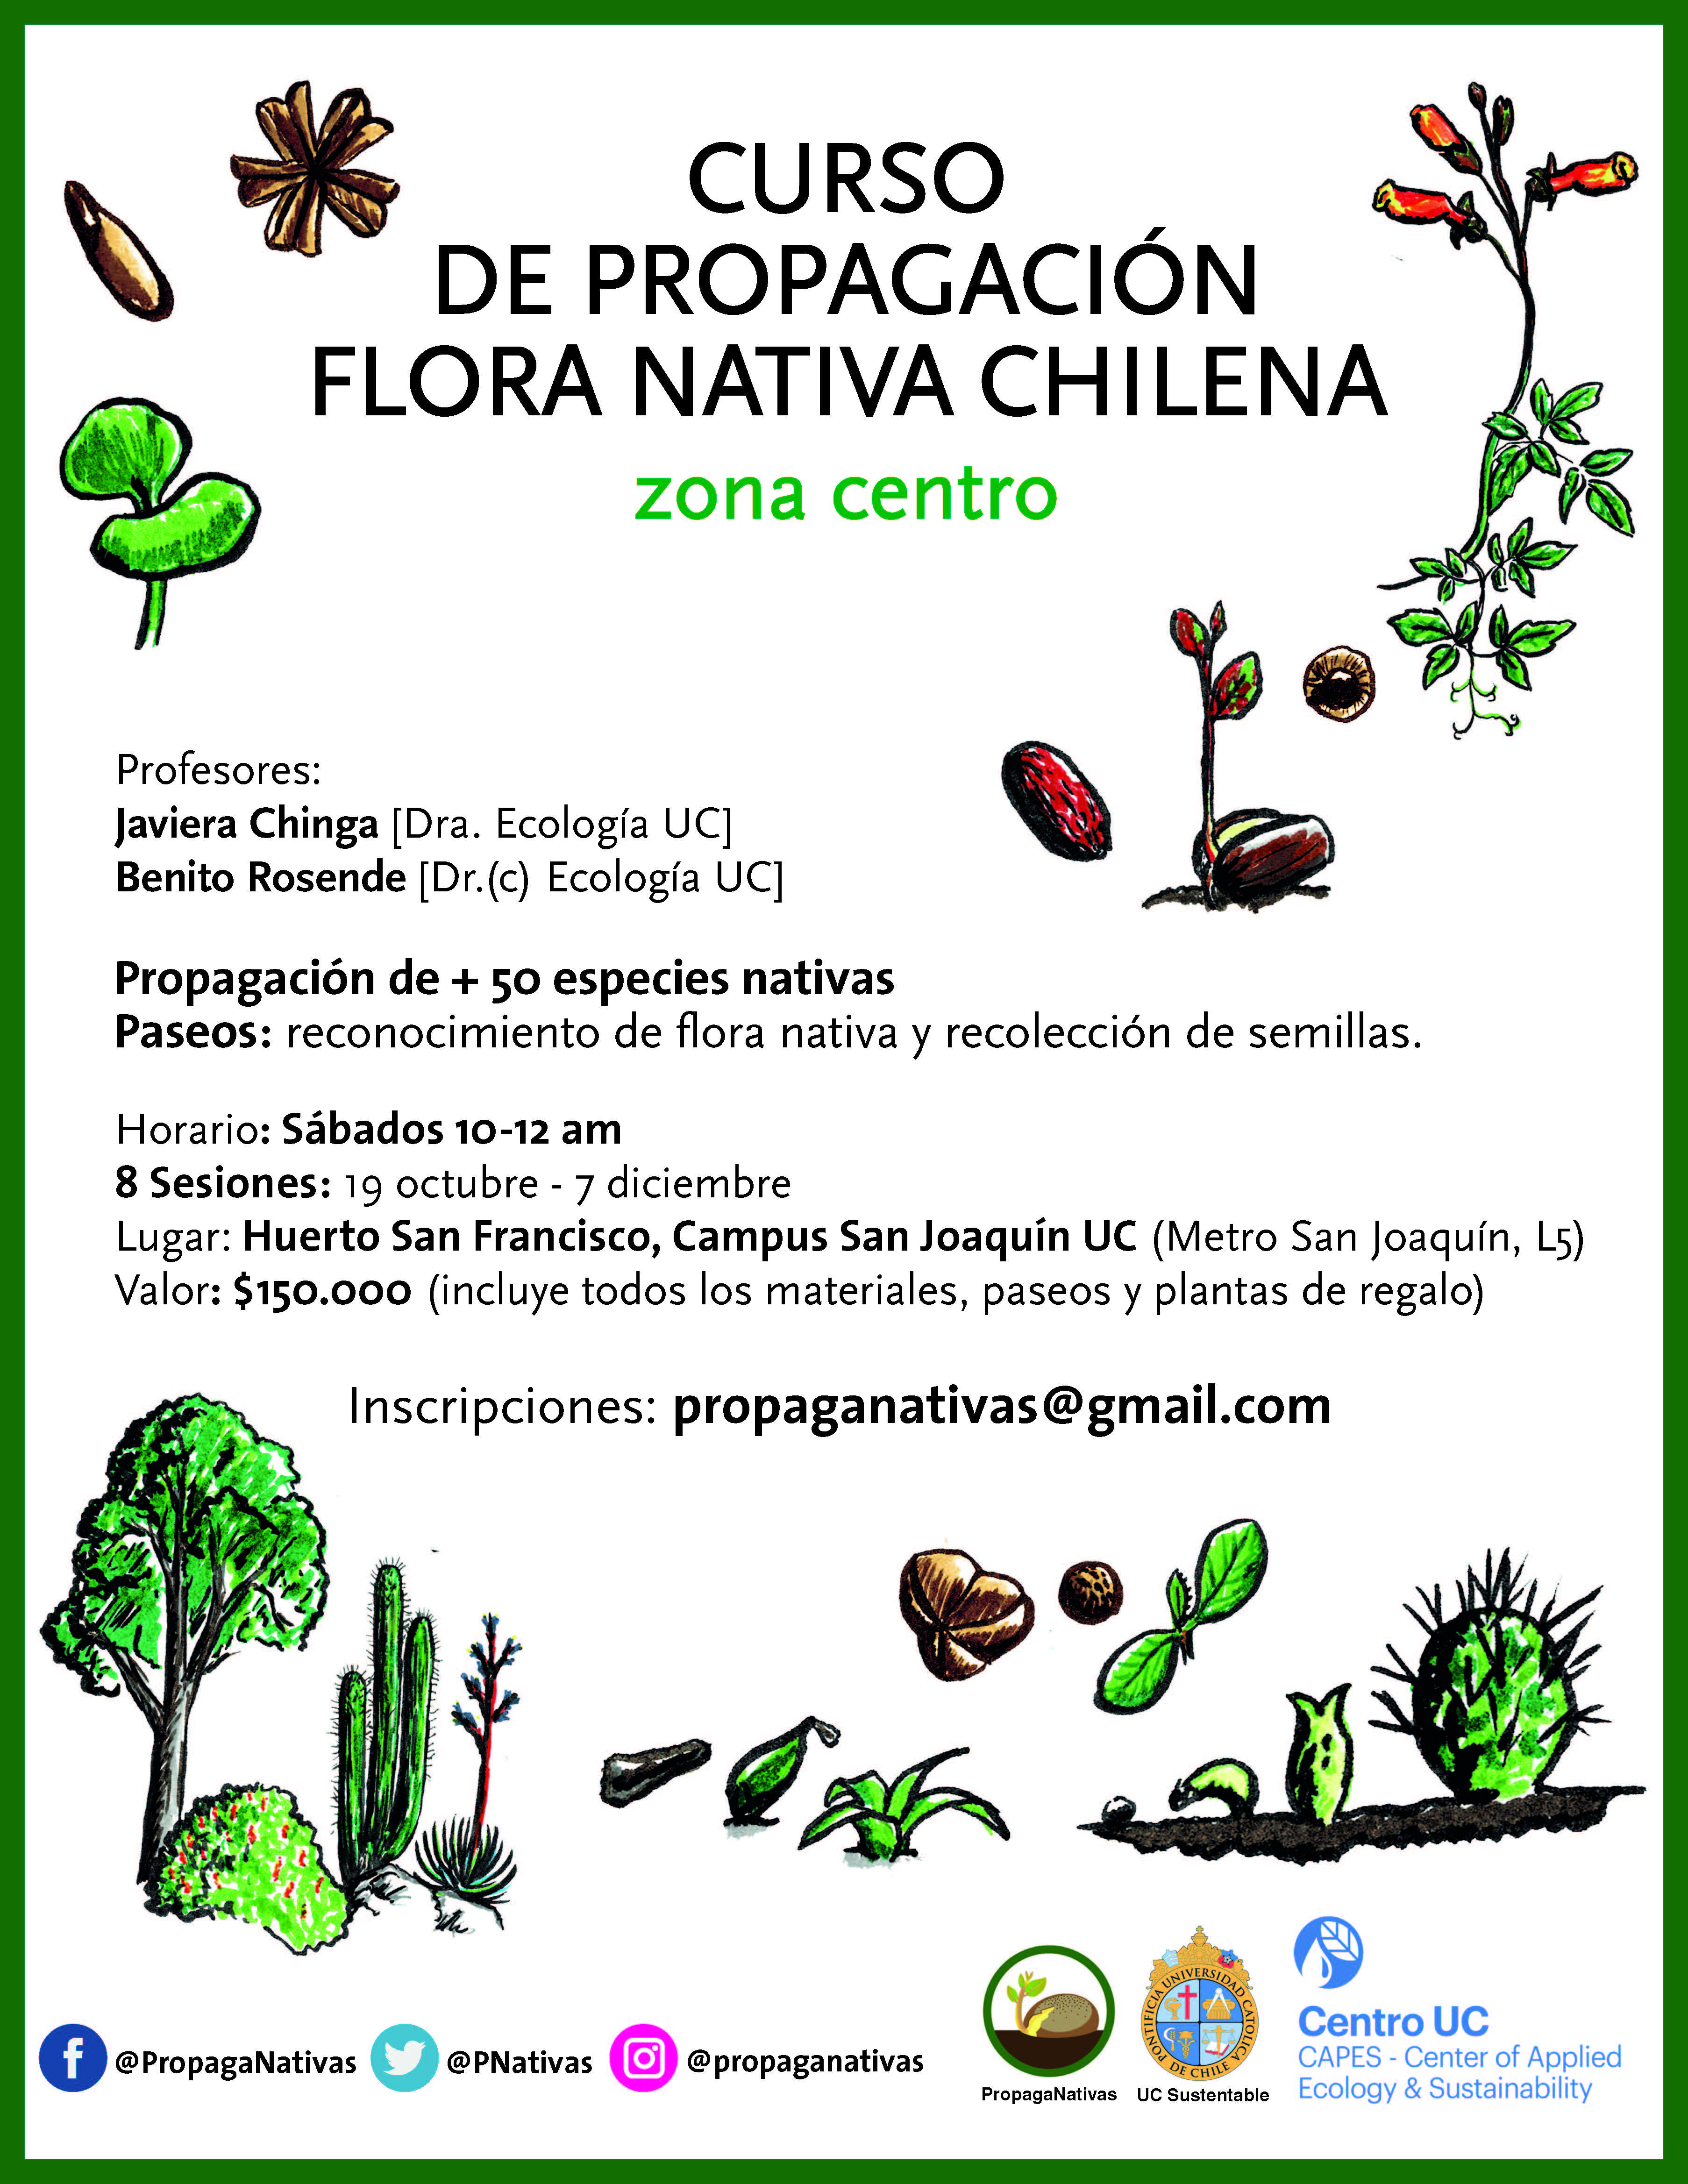 Curso propagación de flora nativa chilena 2019